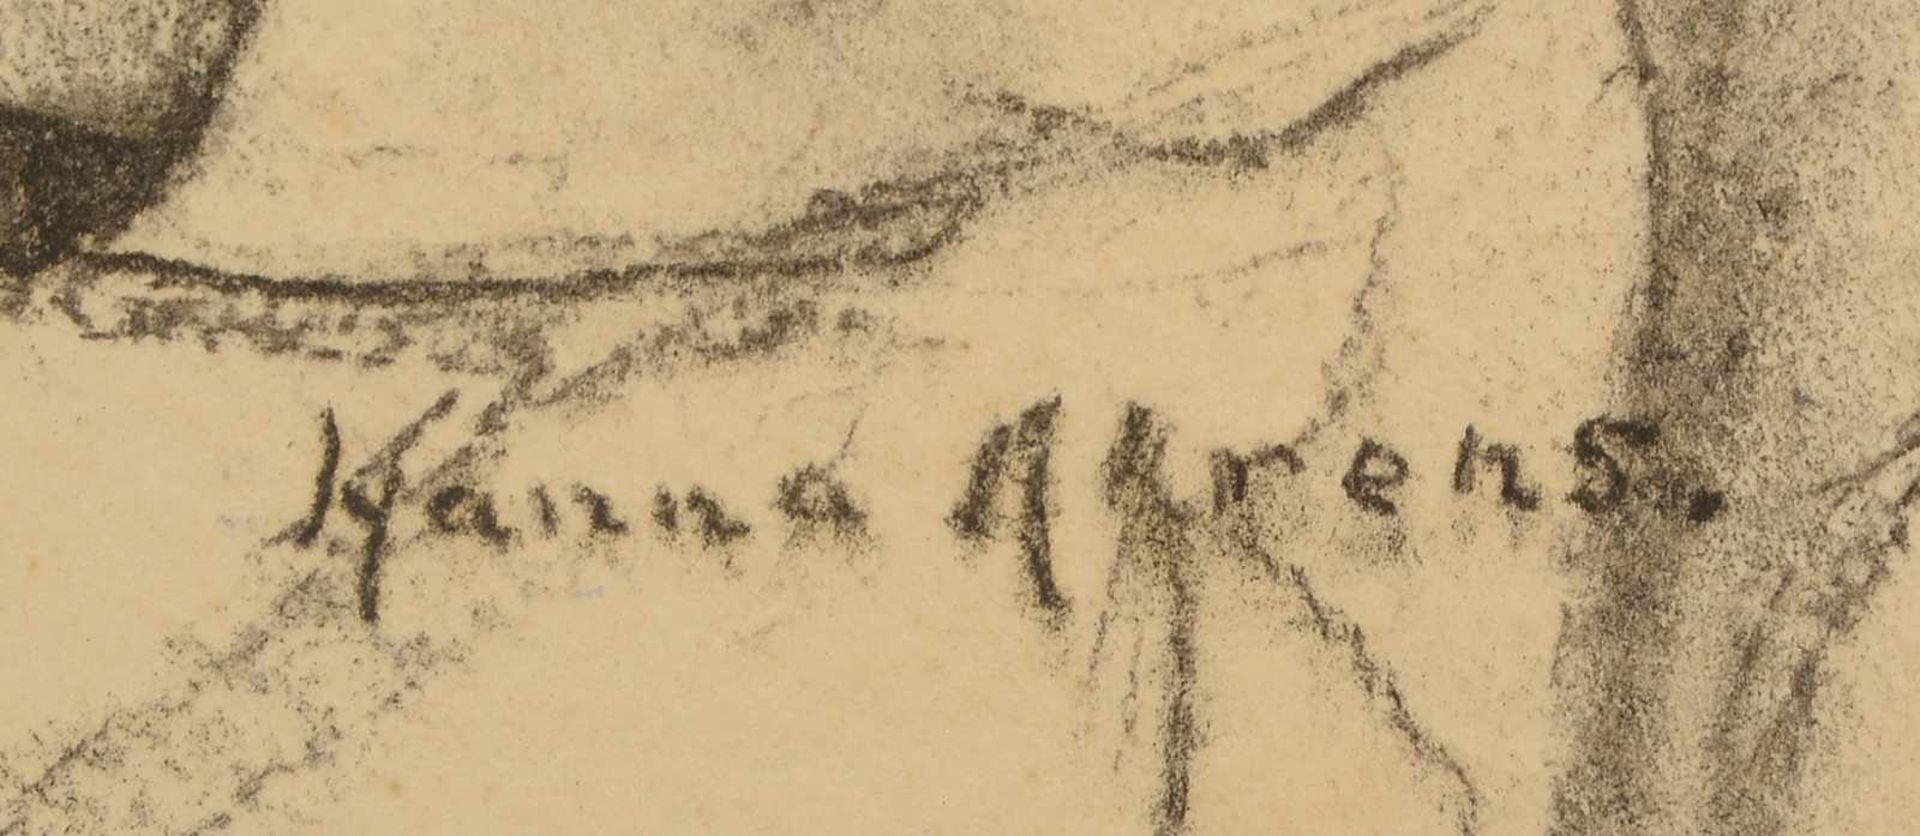 Ahrens, Hanna, 'Frau beim Stricken', Kohlezeichnung, unten rechts signiert, unter Passepartout - Bild 2 aus 2